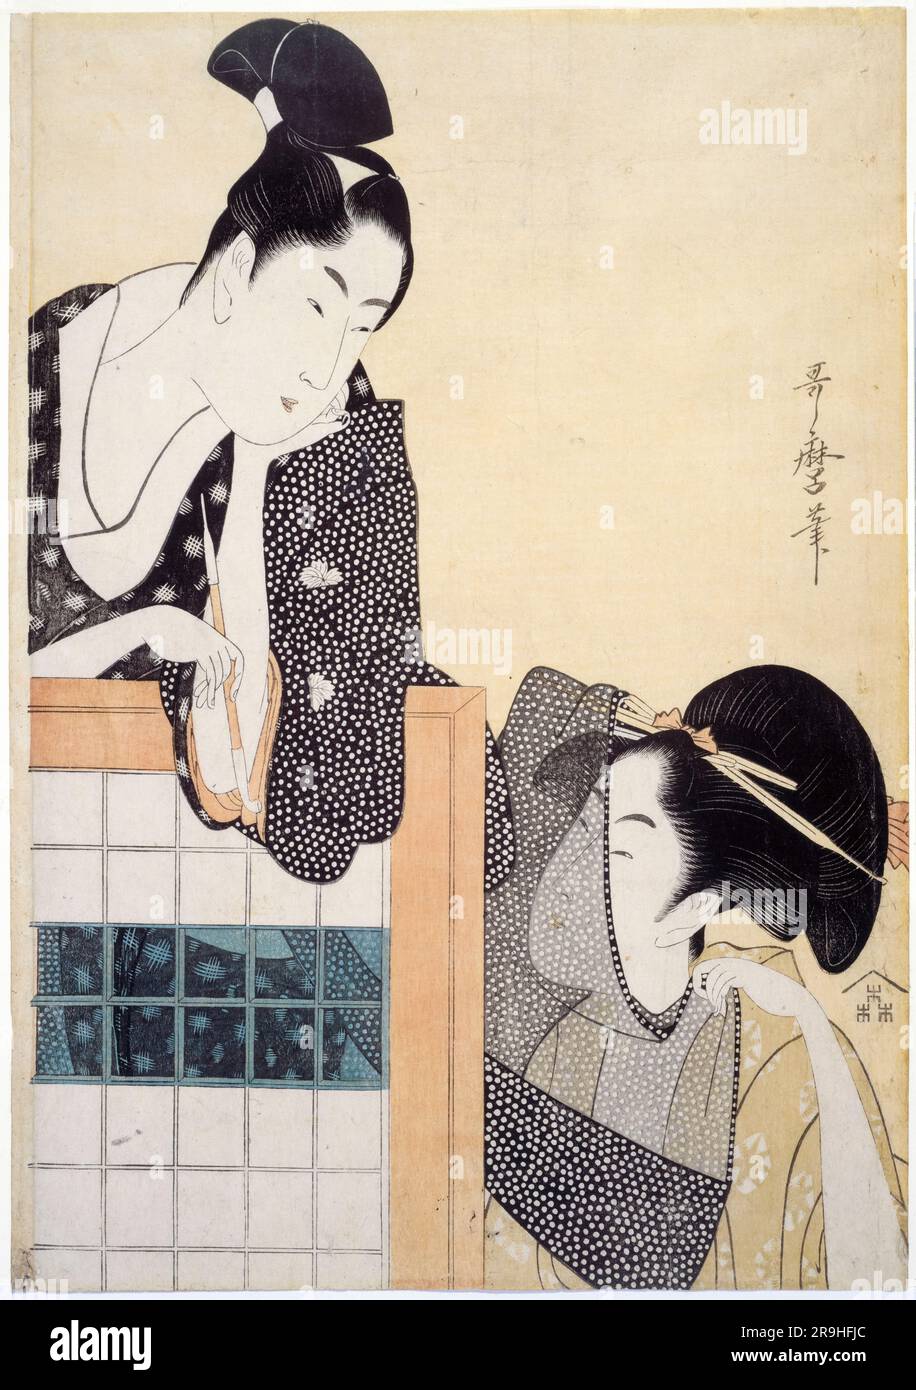 Kitagawa Utamaro, coppia con uno schermo fisso, stampa a taglio di legno in inchiostro, circa 1797 Foto Stock